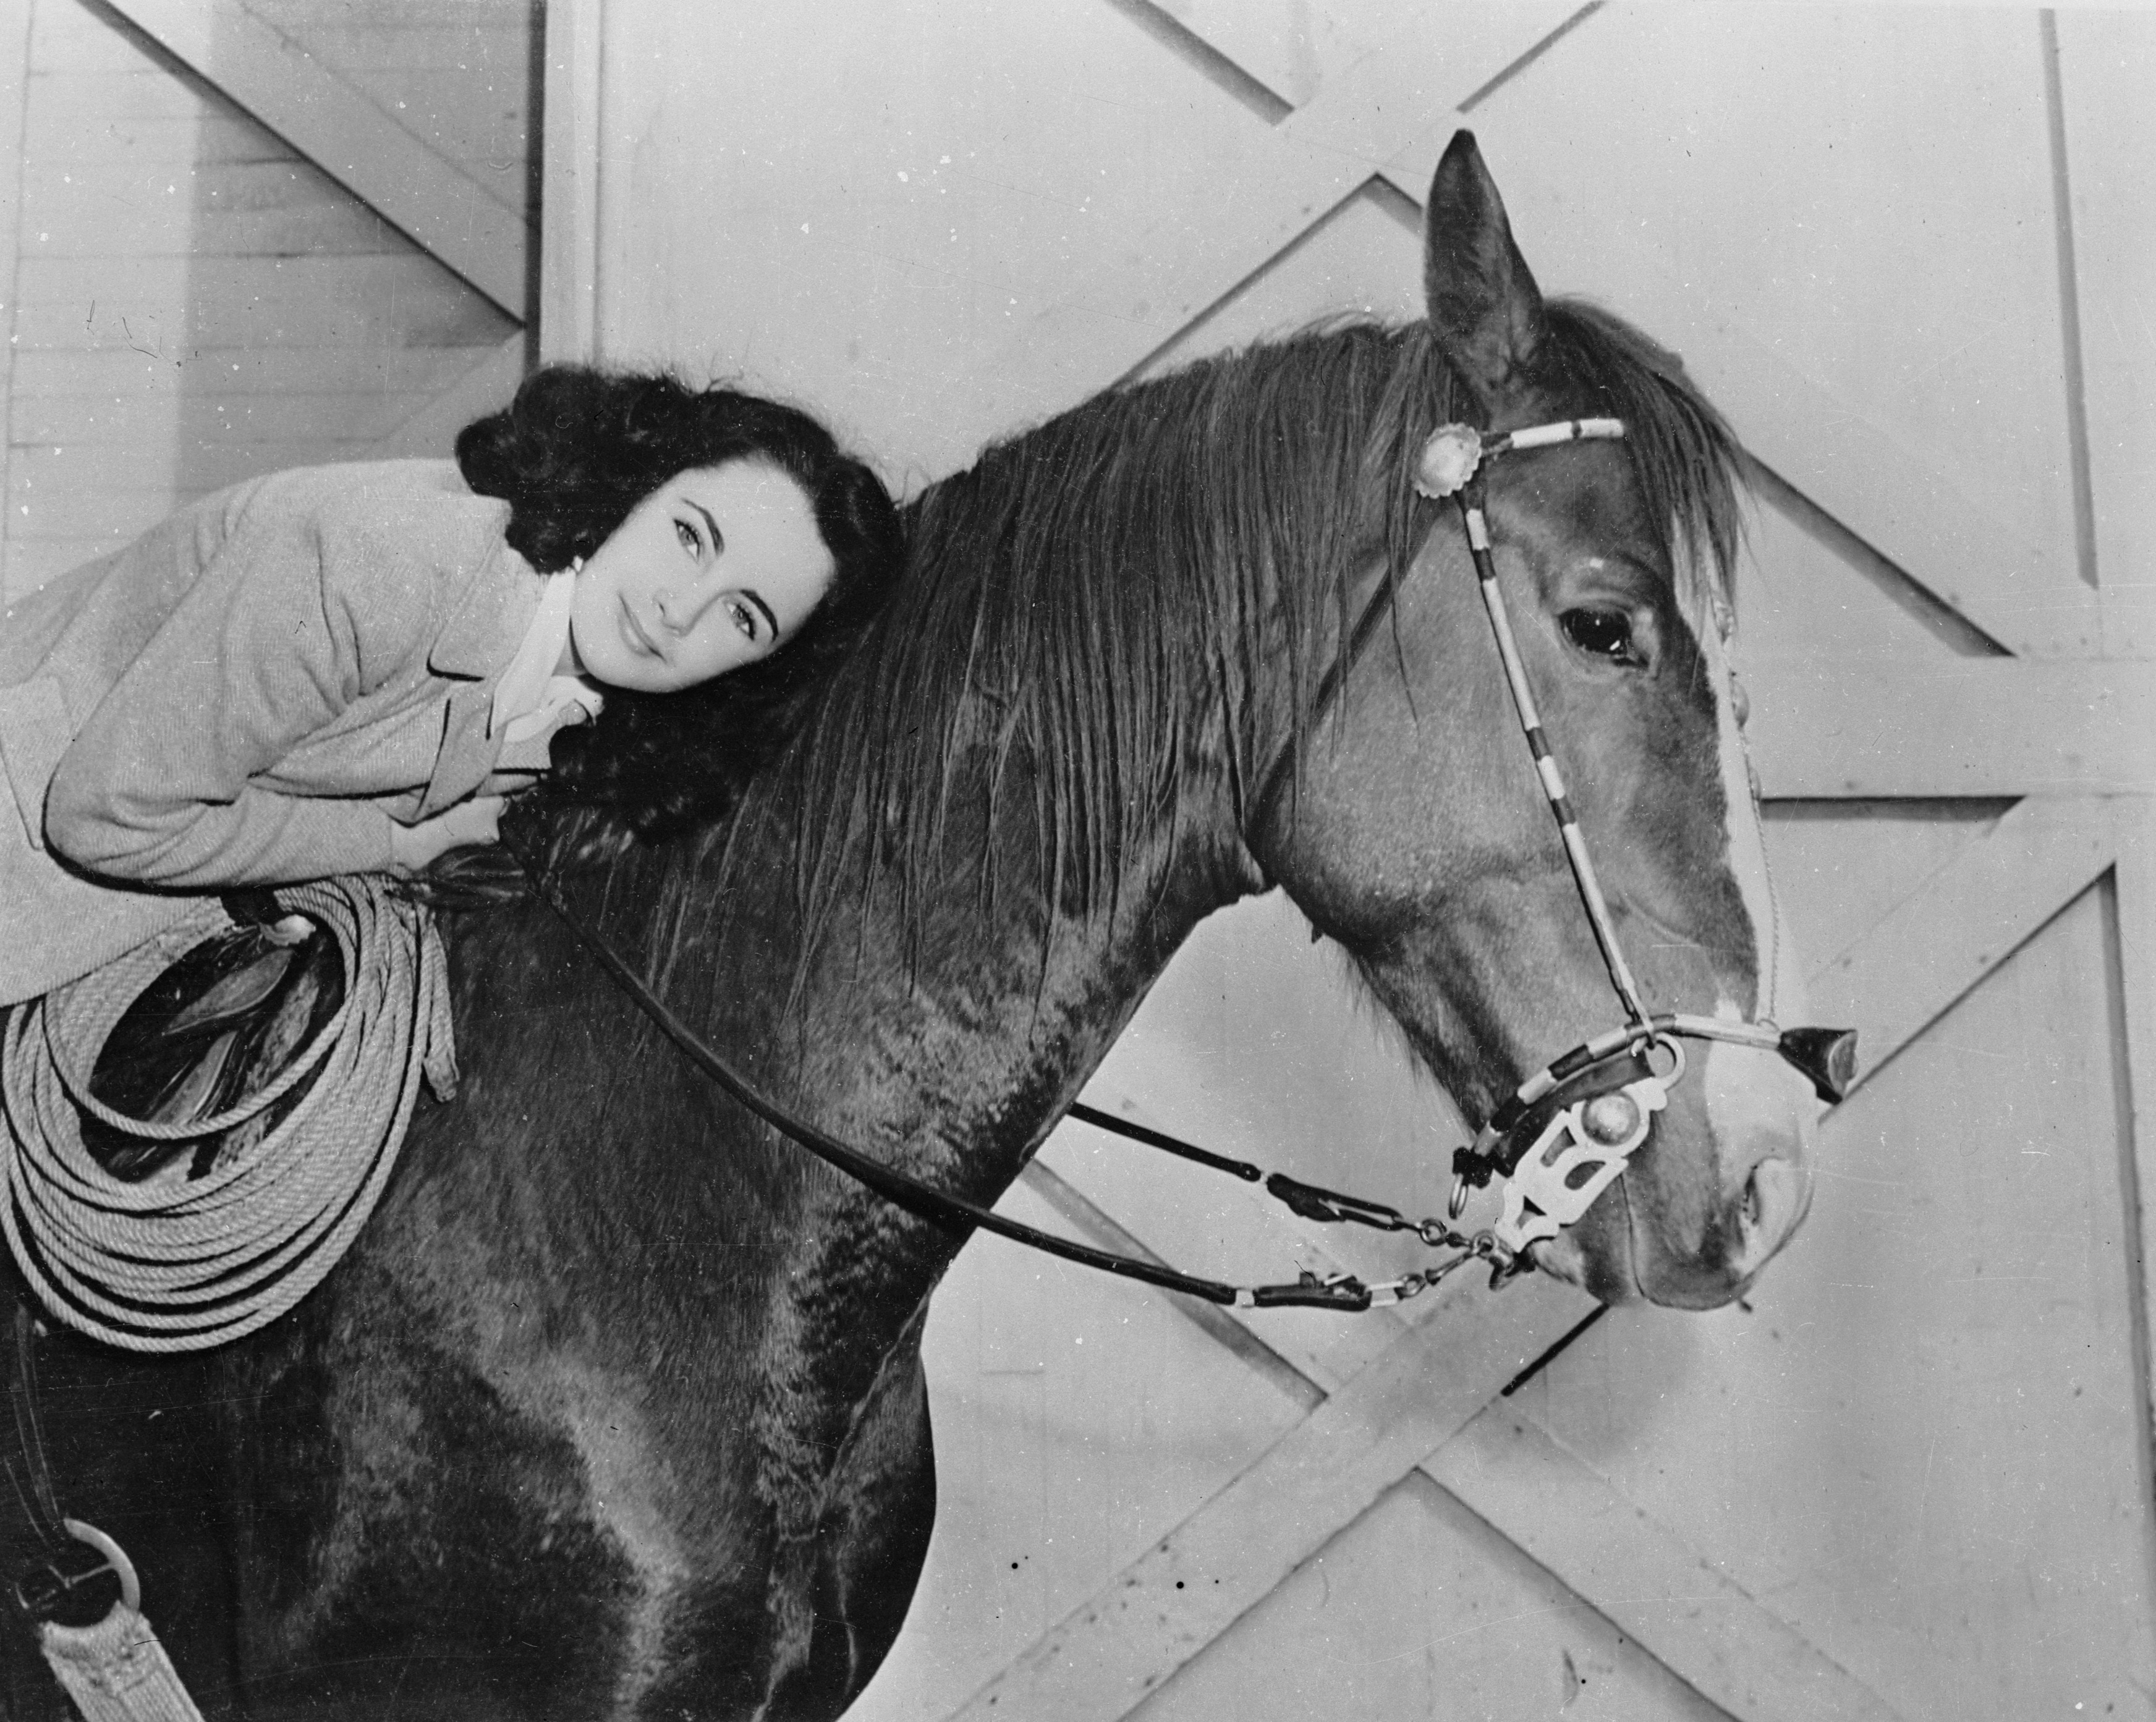 Liz nel 1945 sul set del film "Gran Premio". Durante le riprese la dodicenne Taylor ebbe un incidente a cavallo che le procurò una frattura spinale